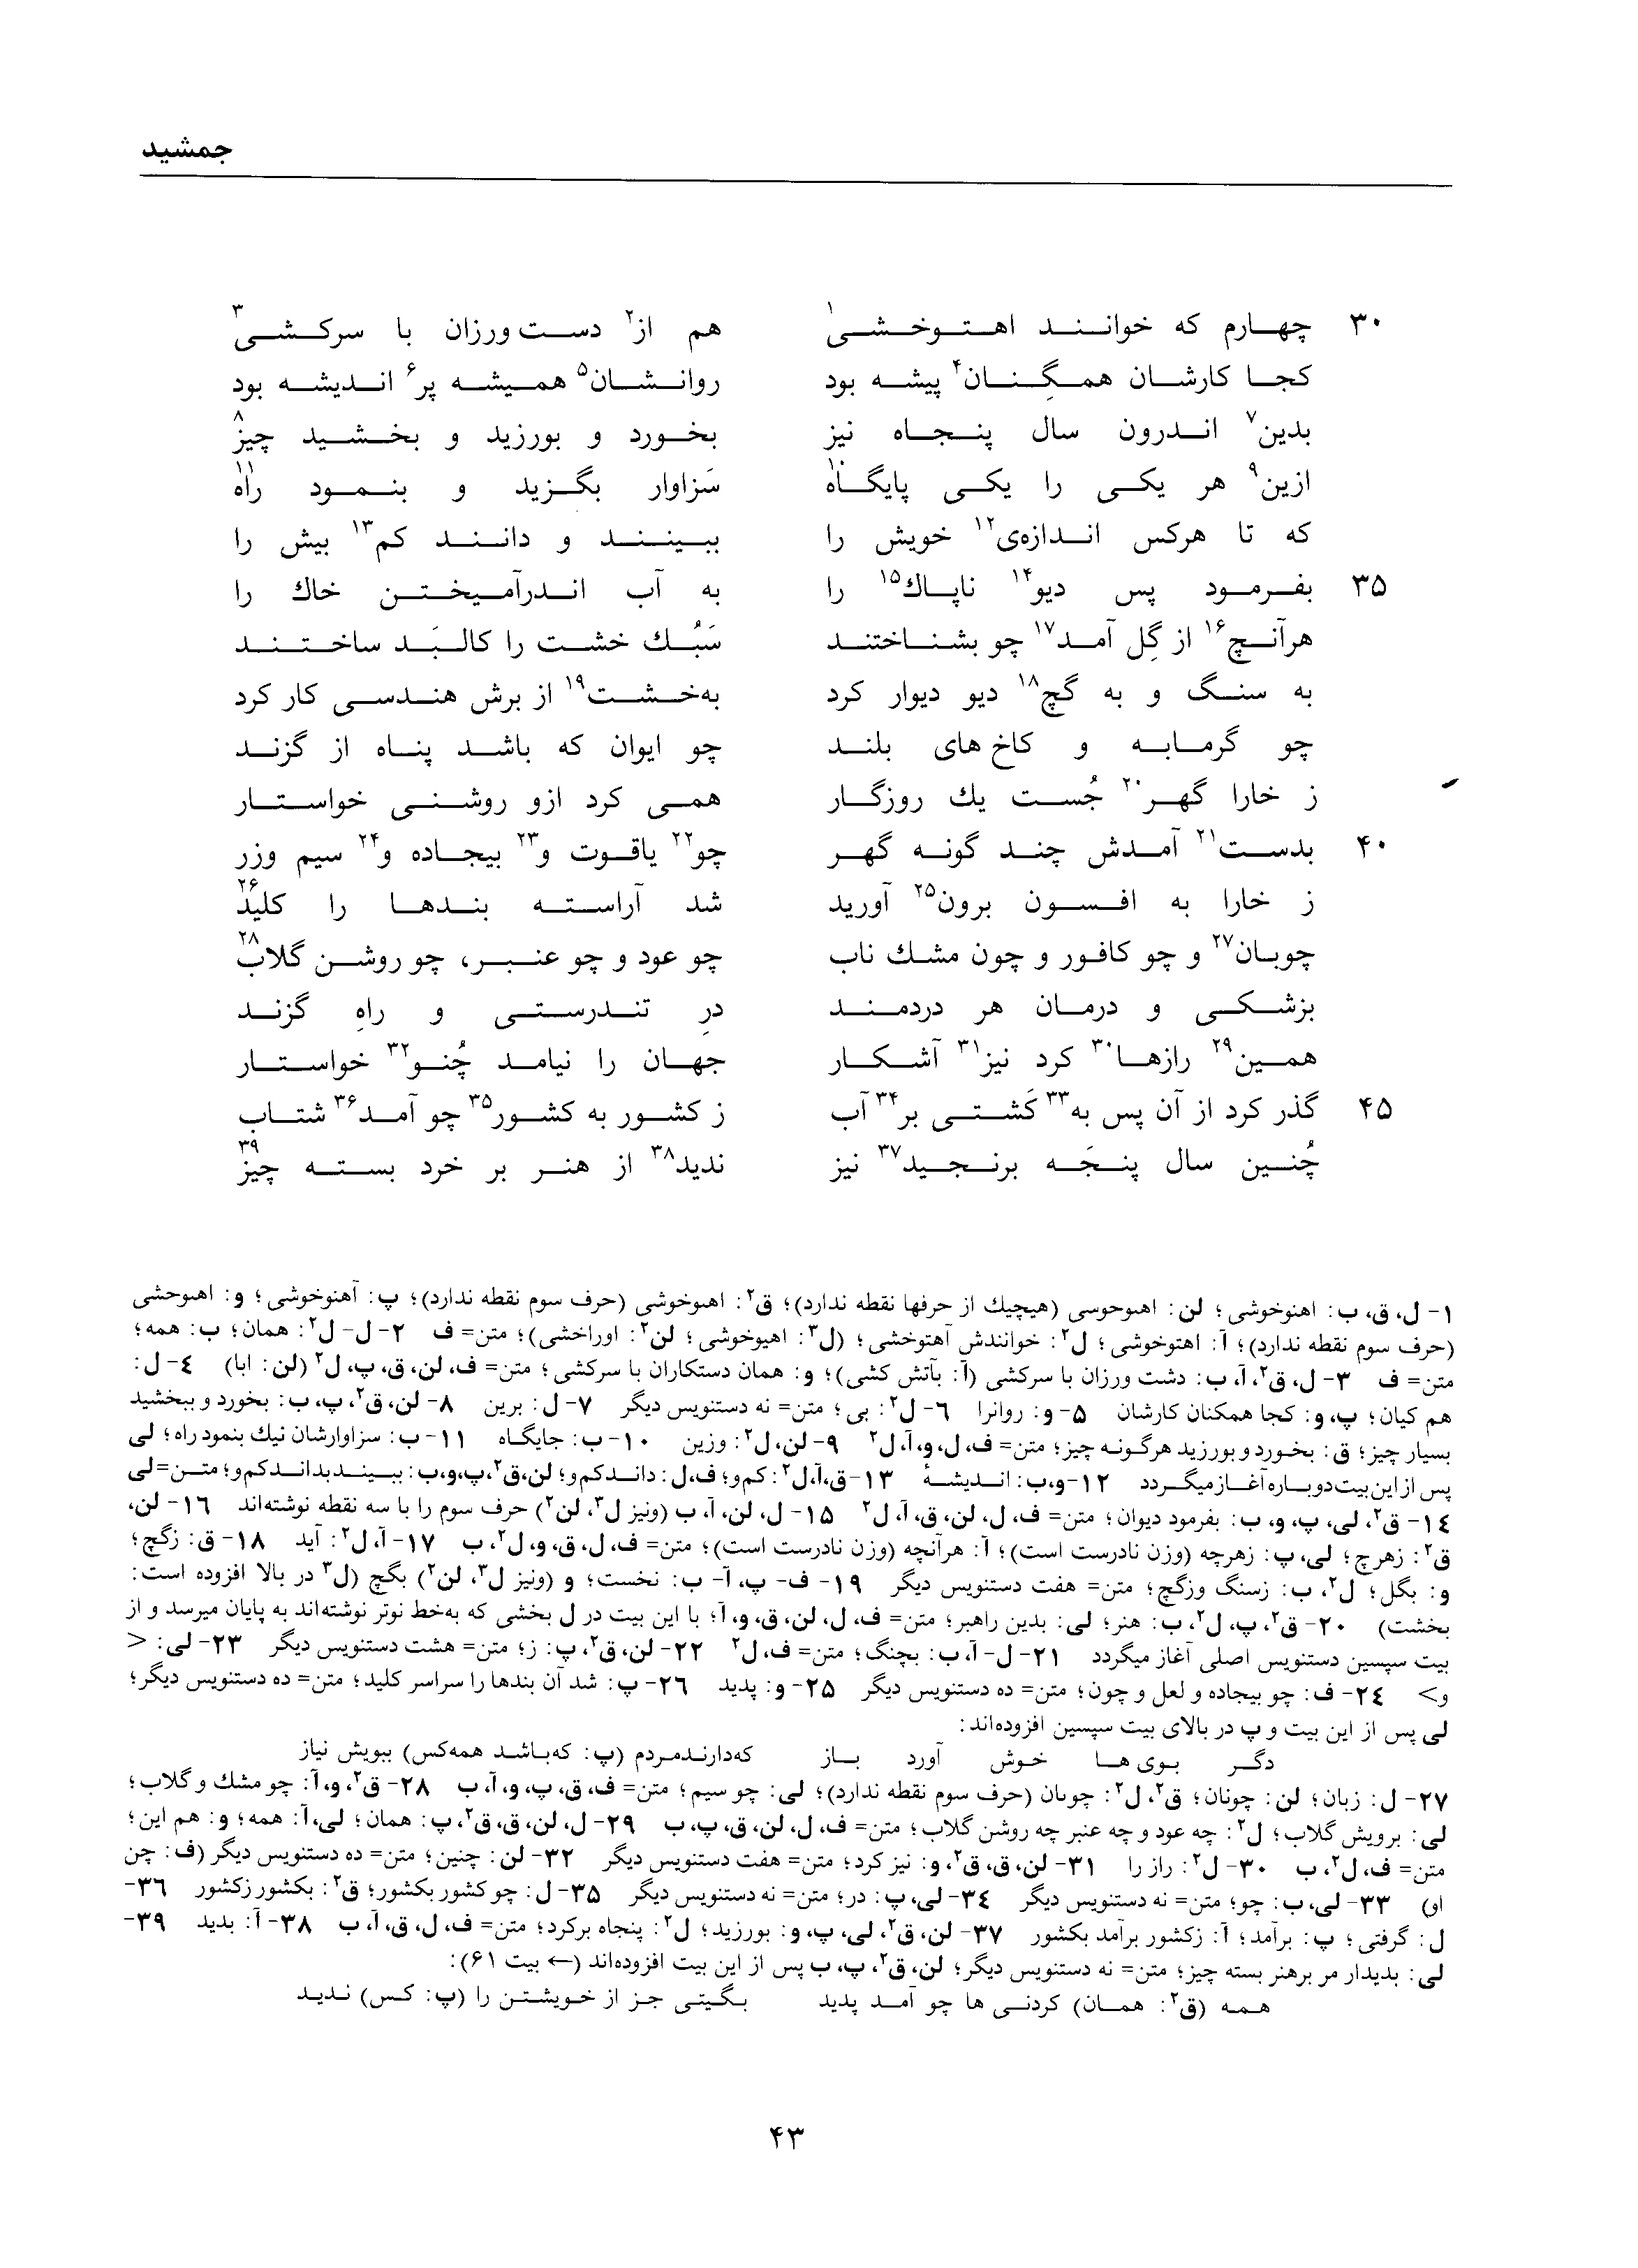 vol. 1, p. 43